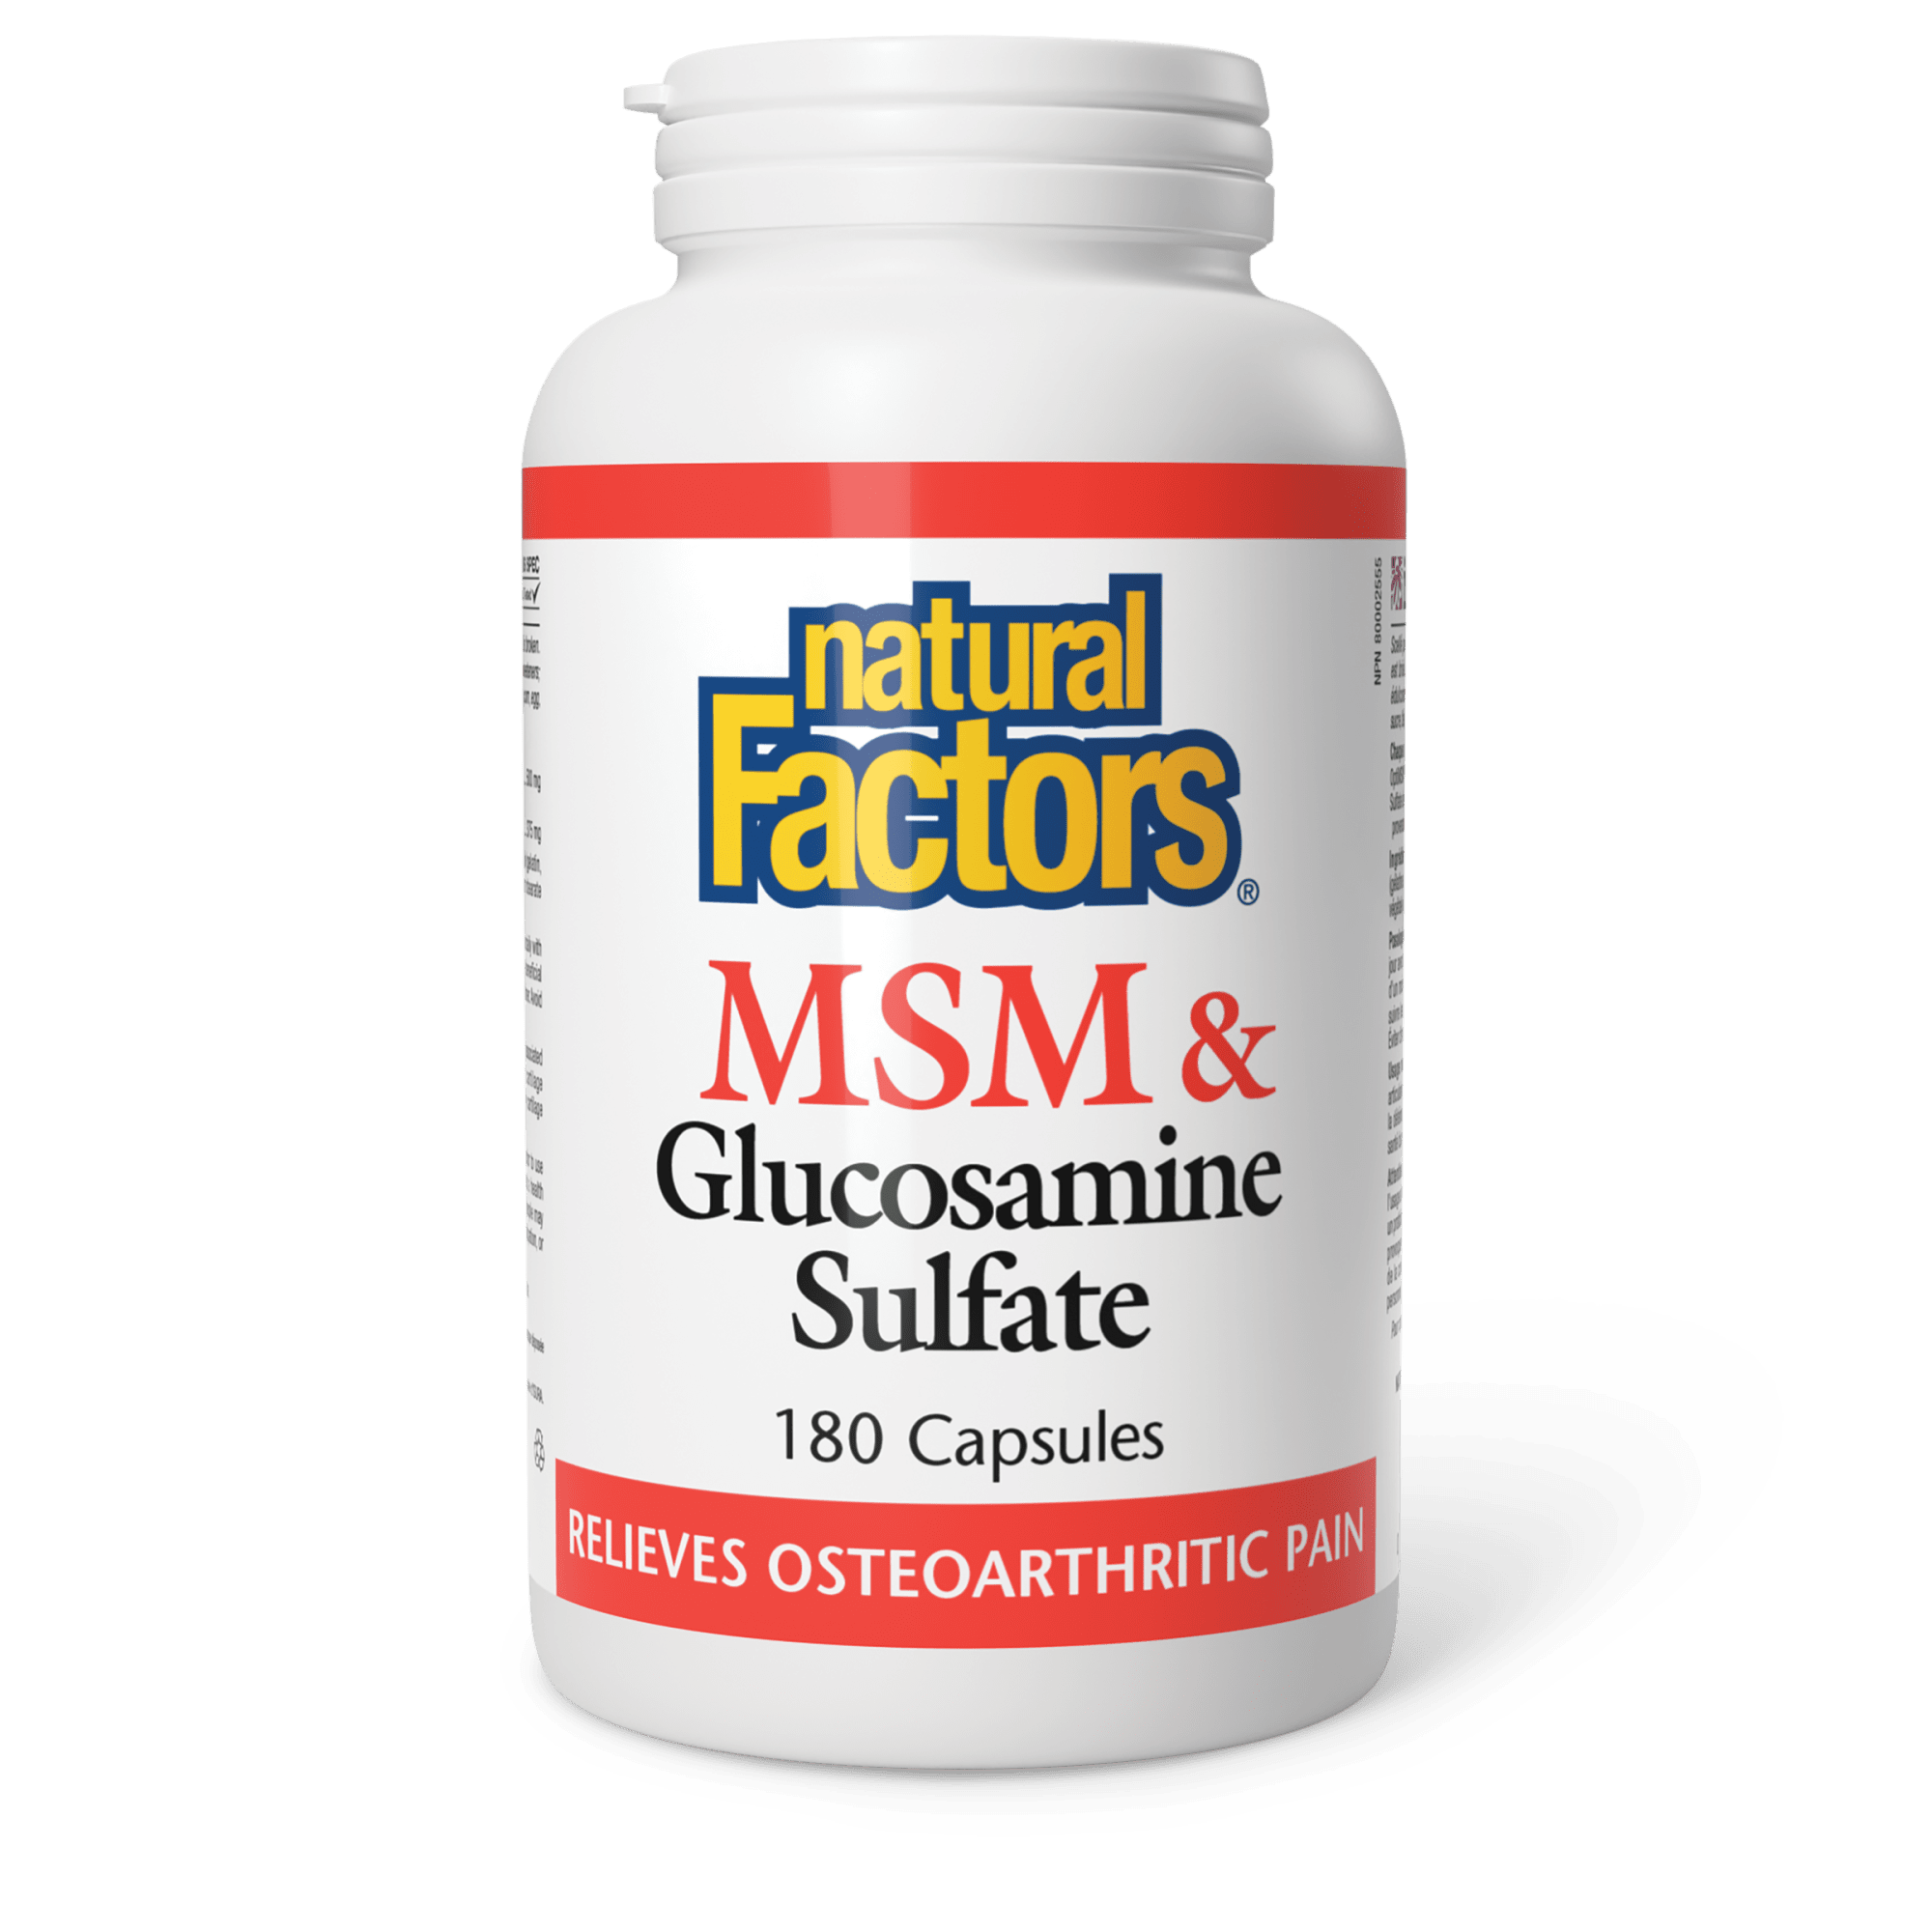 Natural Factors MSM & Glucosamine Sulfate 180 Capsules